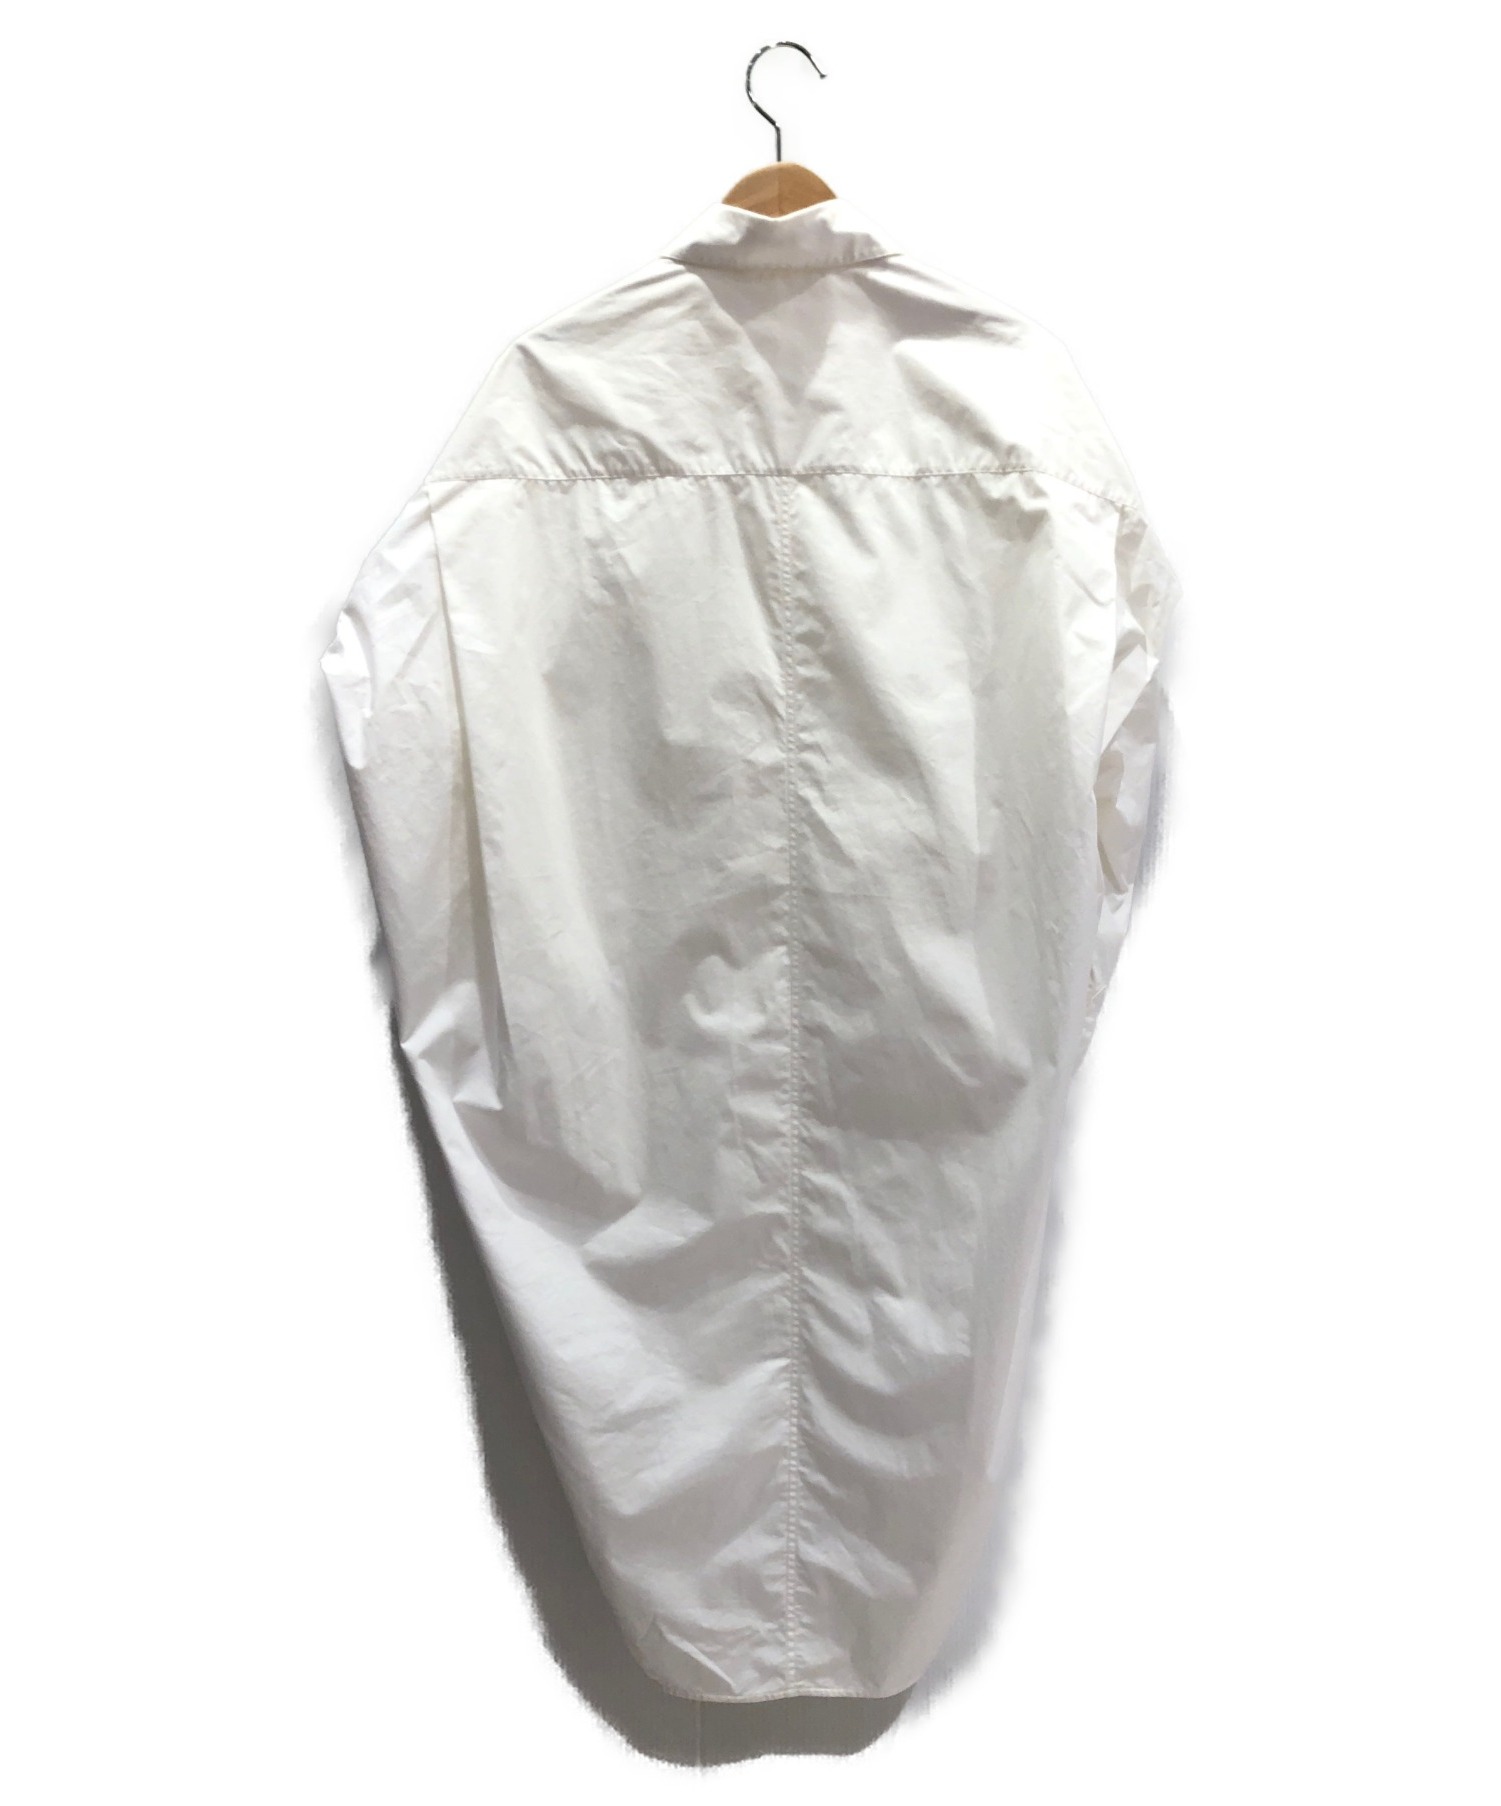 CELINE (セリーヌ) オーバーサイズシャツワンピース ホワイト サイズ:34